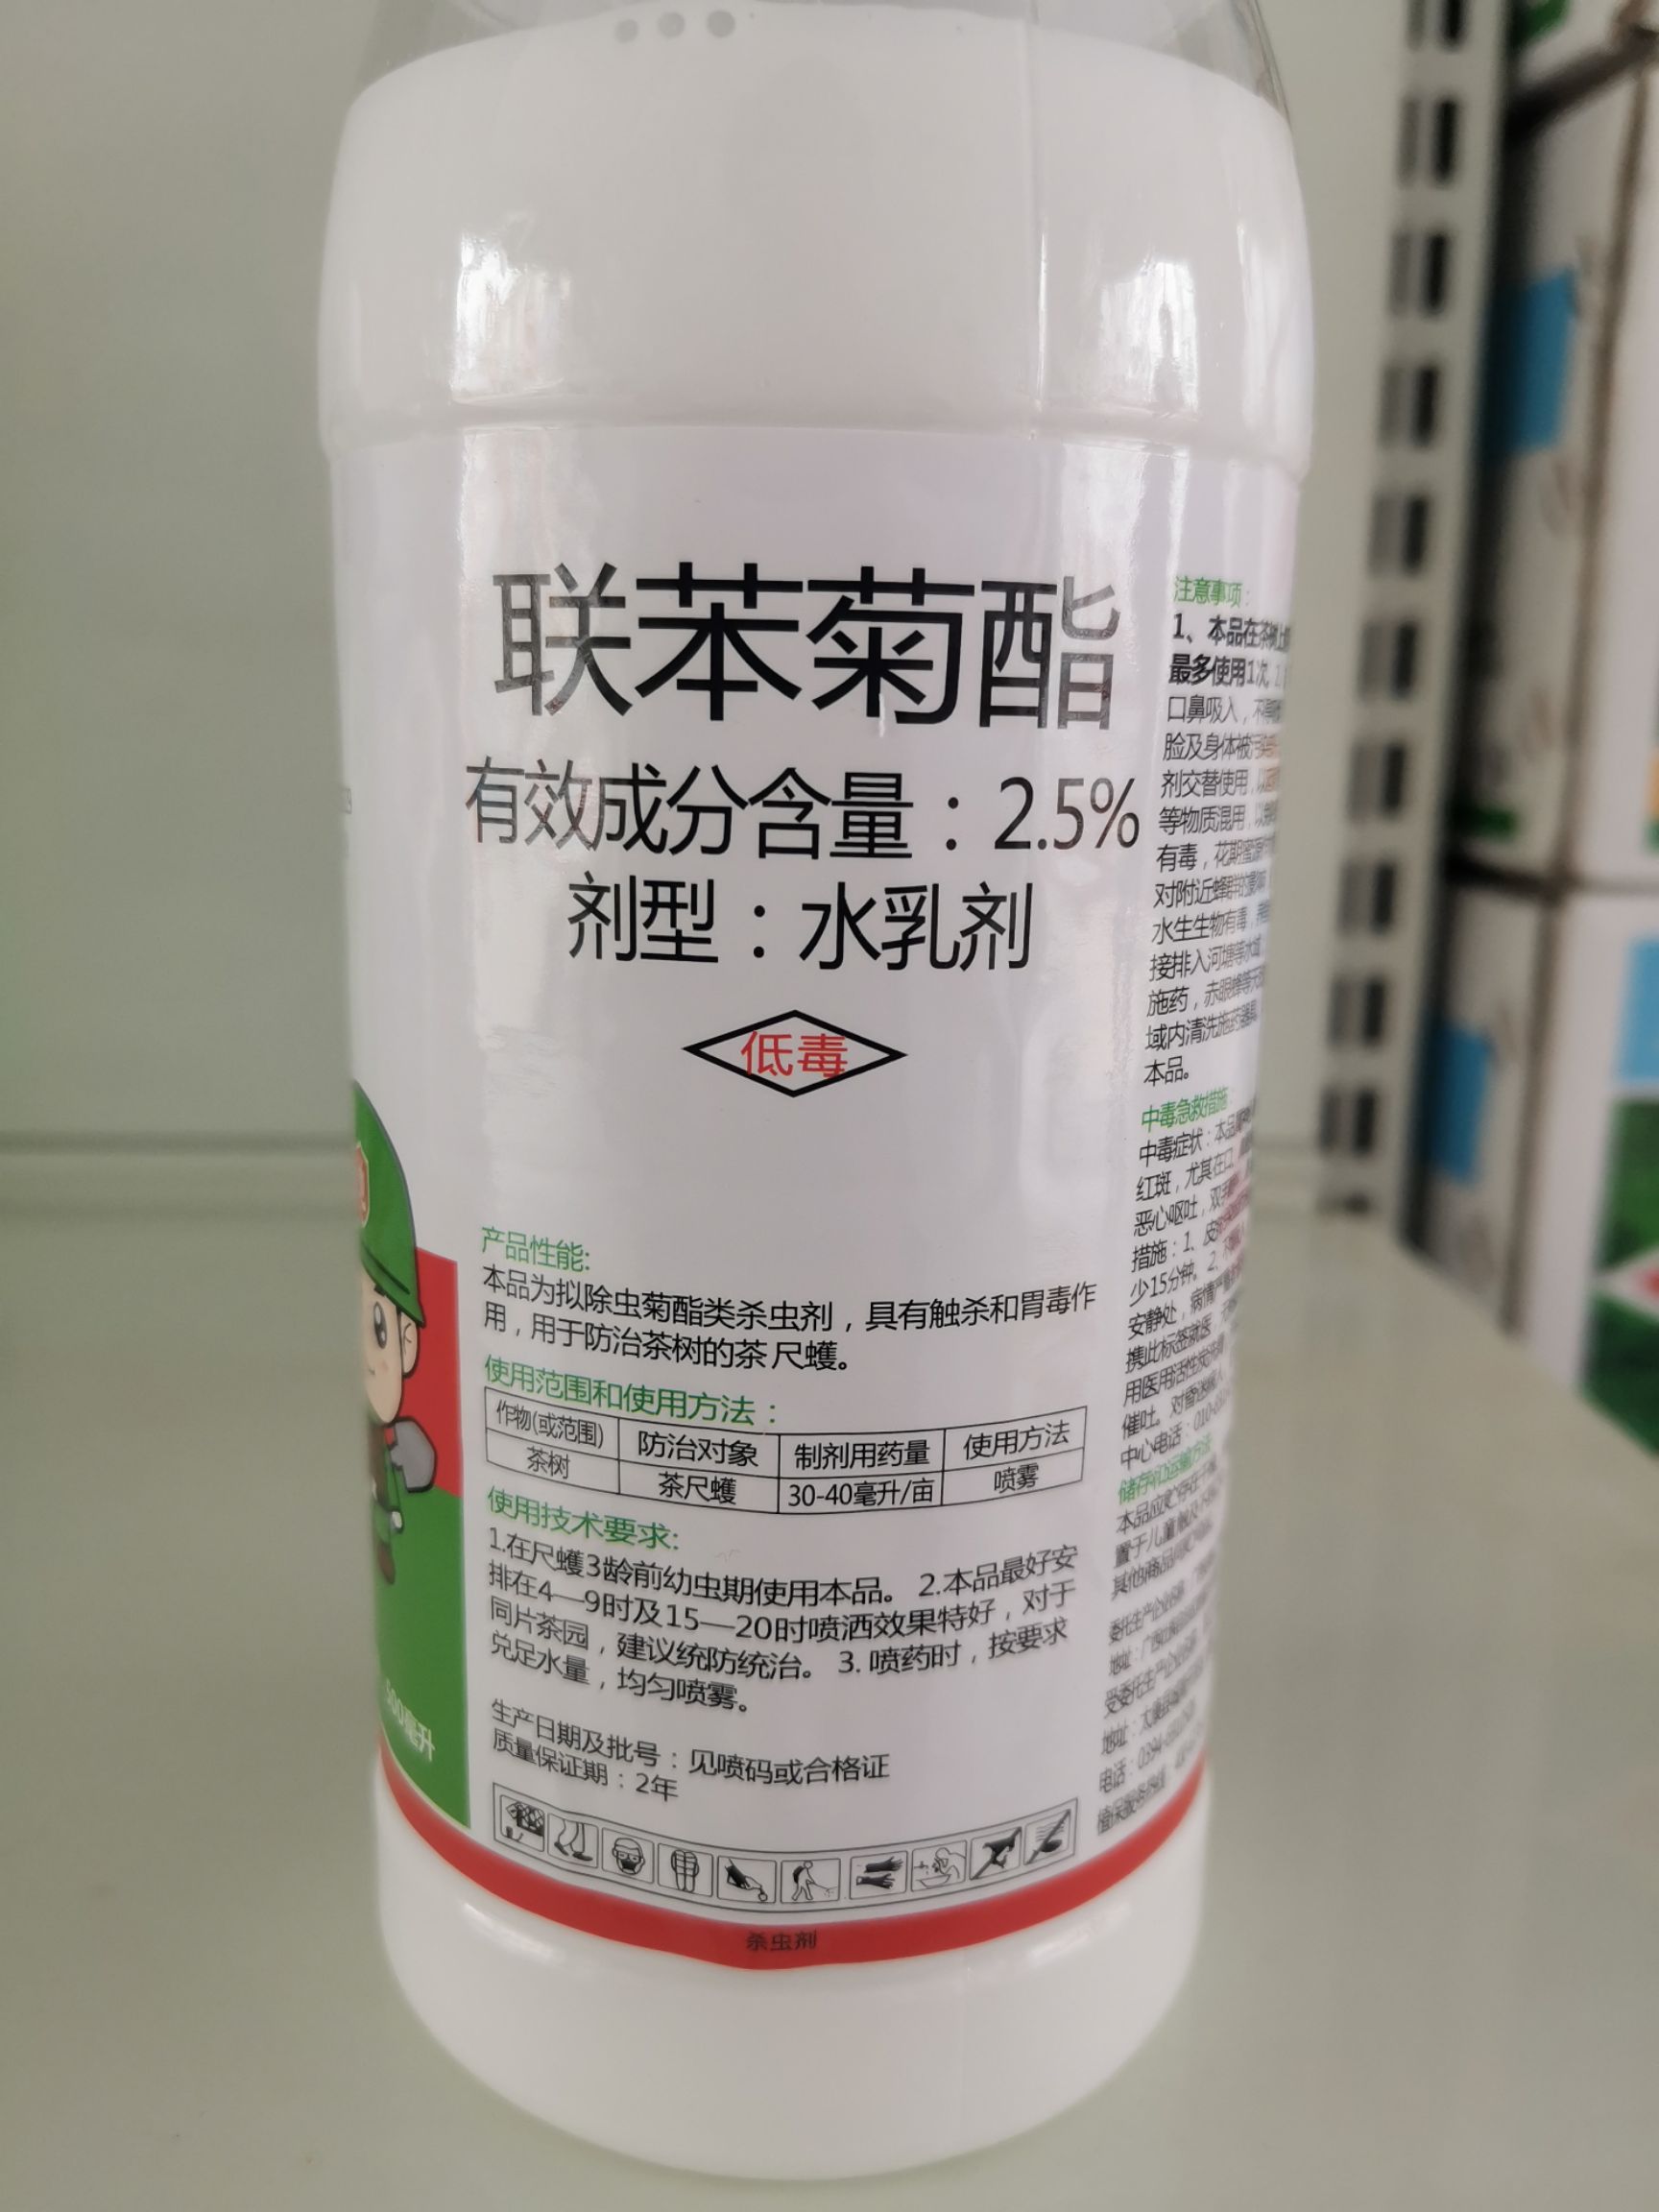 品种名:联苯菊酯 剂型:水乳剂 货品包装:瓶装 毒性:低毒